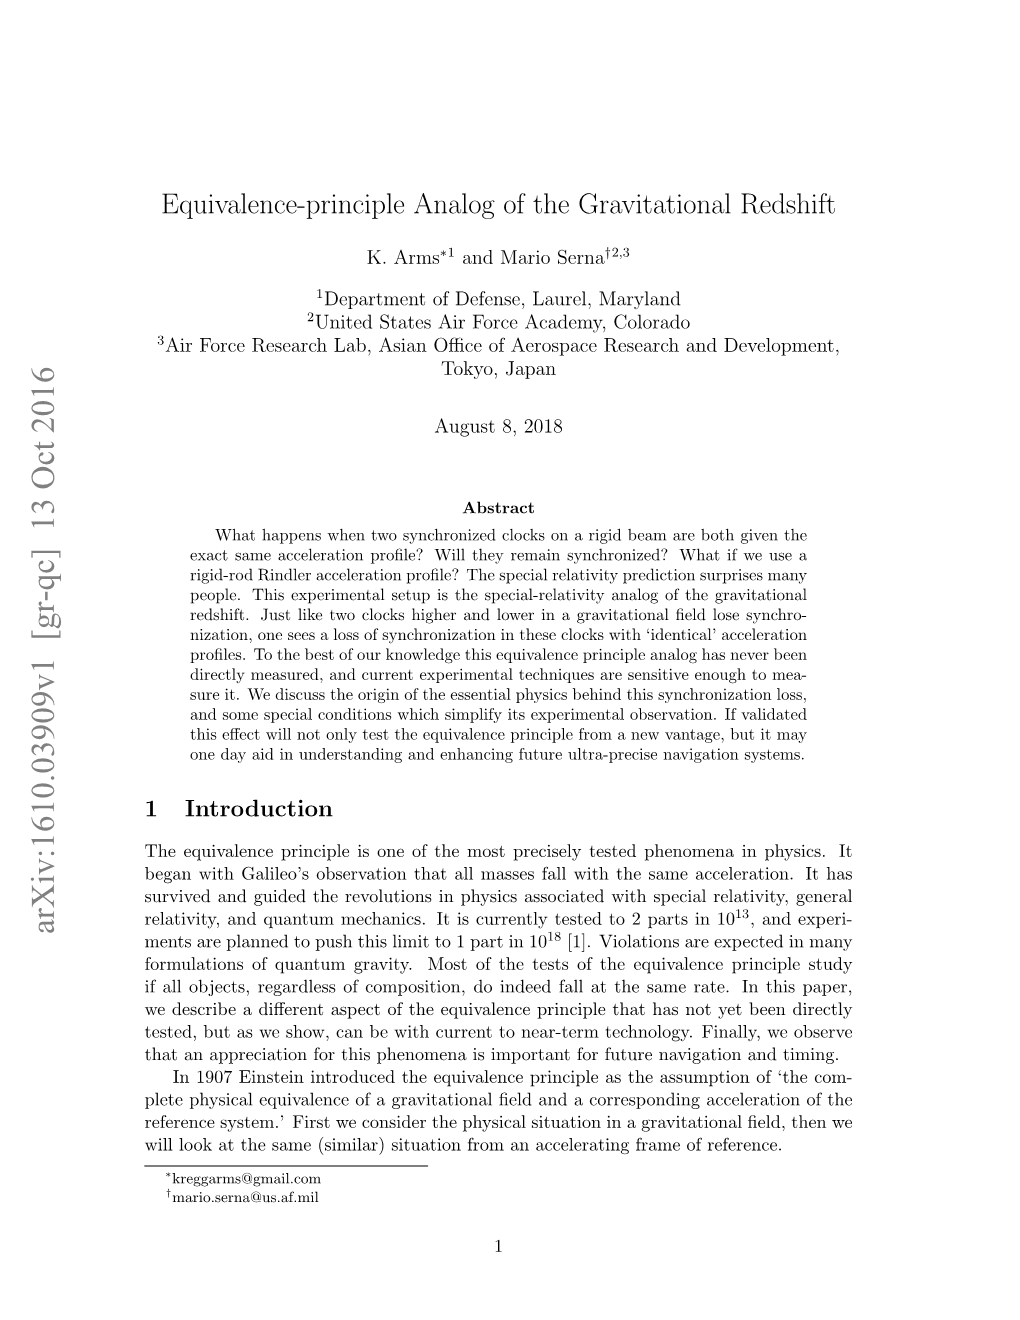 Equivalence-Principle Analog of the Gravitational Redshift